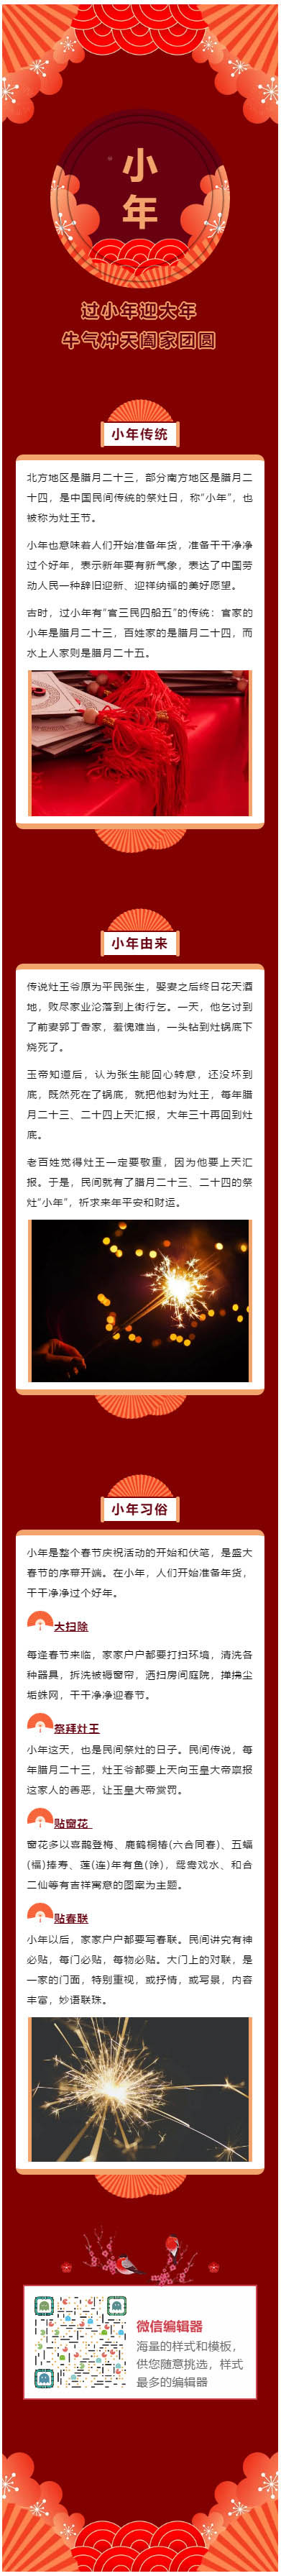 灶王爷小年祭灶节微信公众号模板推送图文素材推文资料